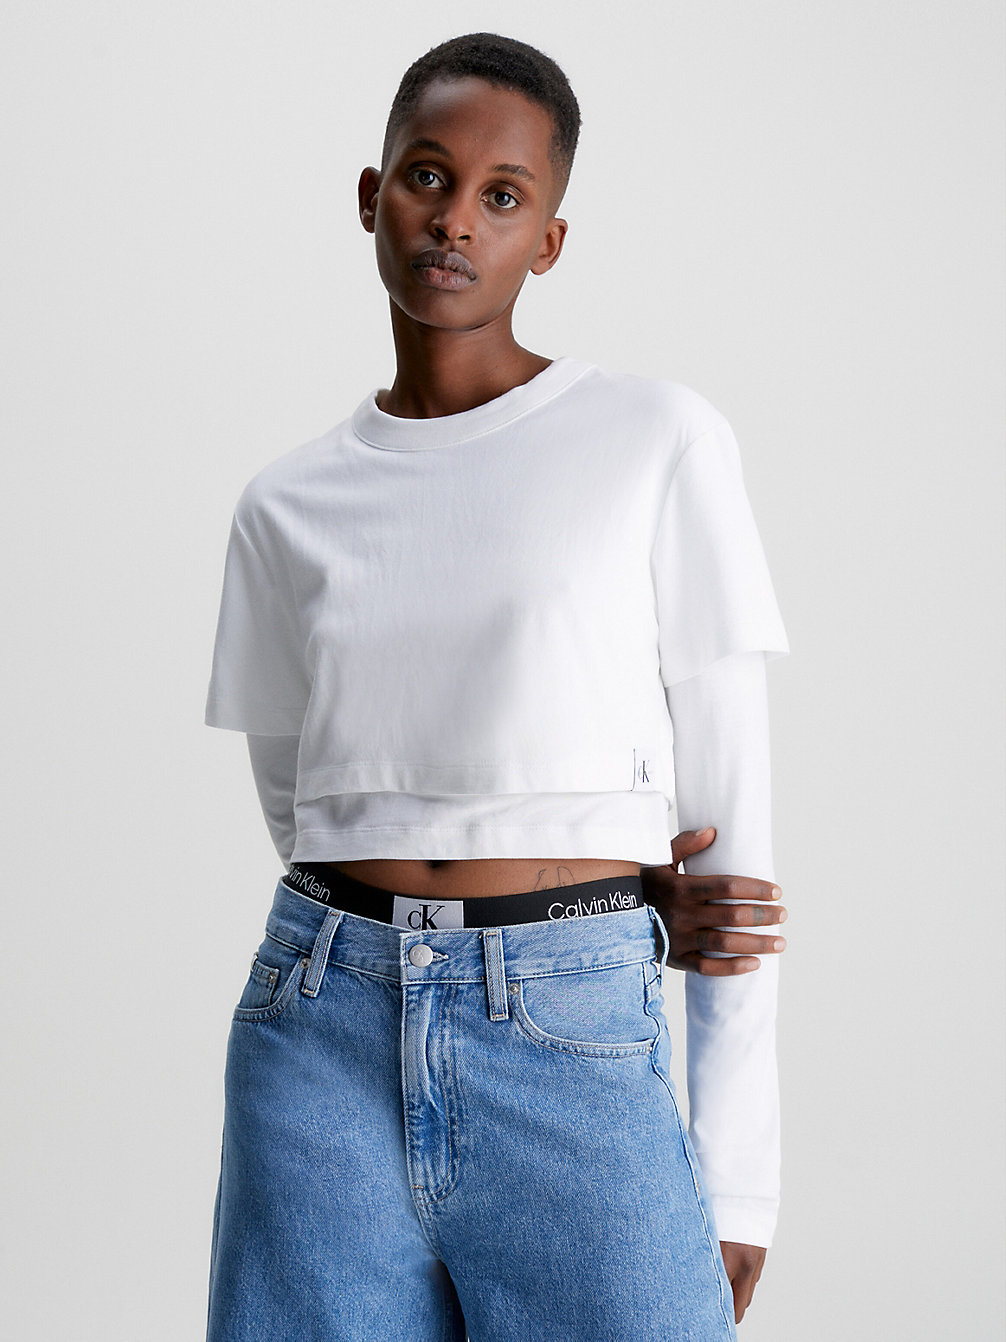 BRIGHT WHITE > Doppel-Layer Langärmliges T-Shirt > undefined Damen - Calvin Klein